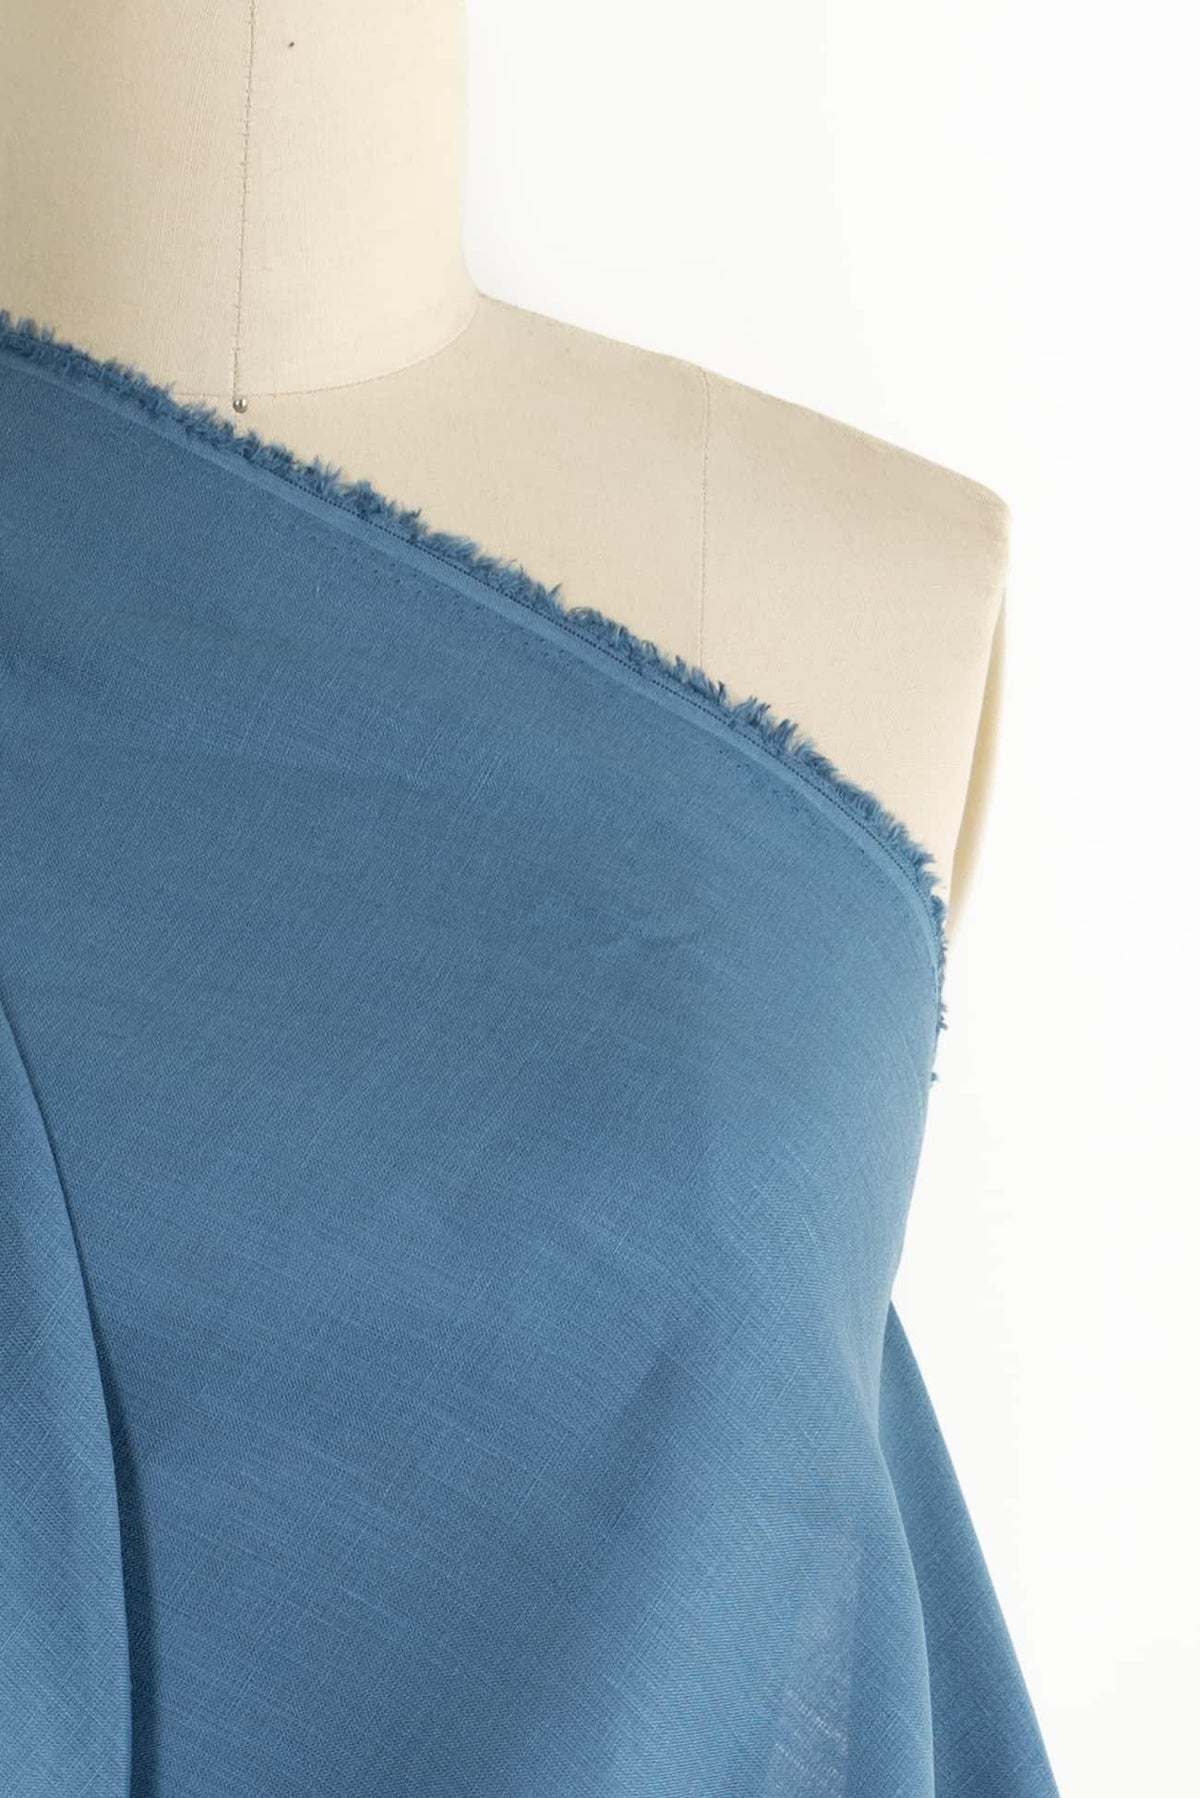 Aztec Blue Linen Woven - Marcy Tilton Fabrics